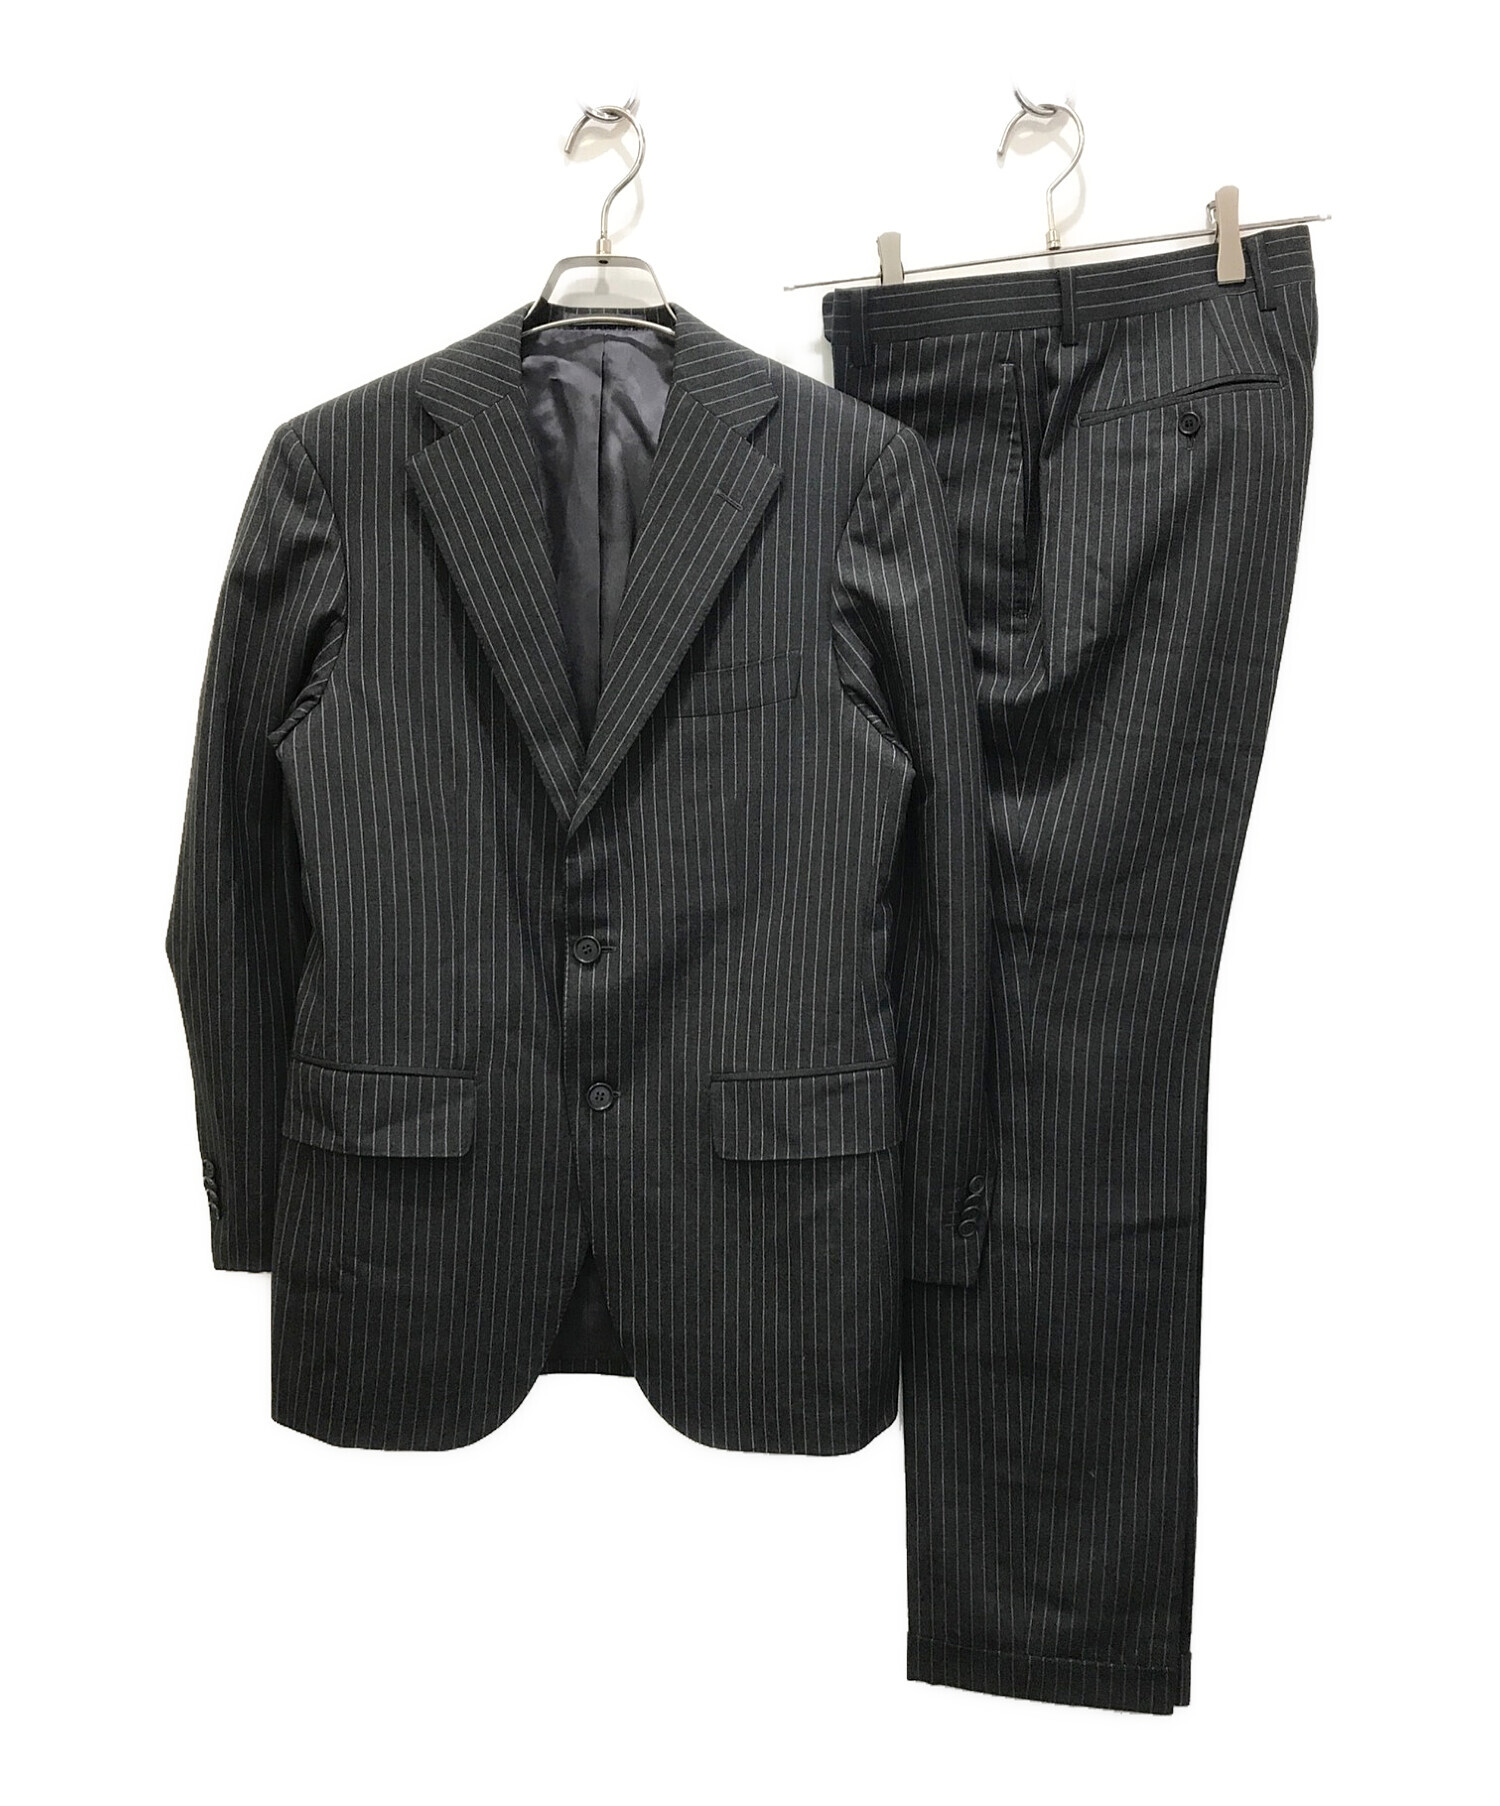 正規店即納【極美品】RING JACKET セットアップ スーツ ストライプ グレー L スーツ